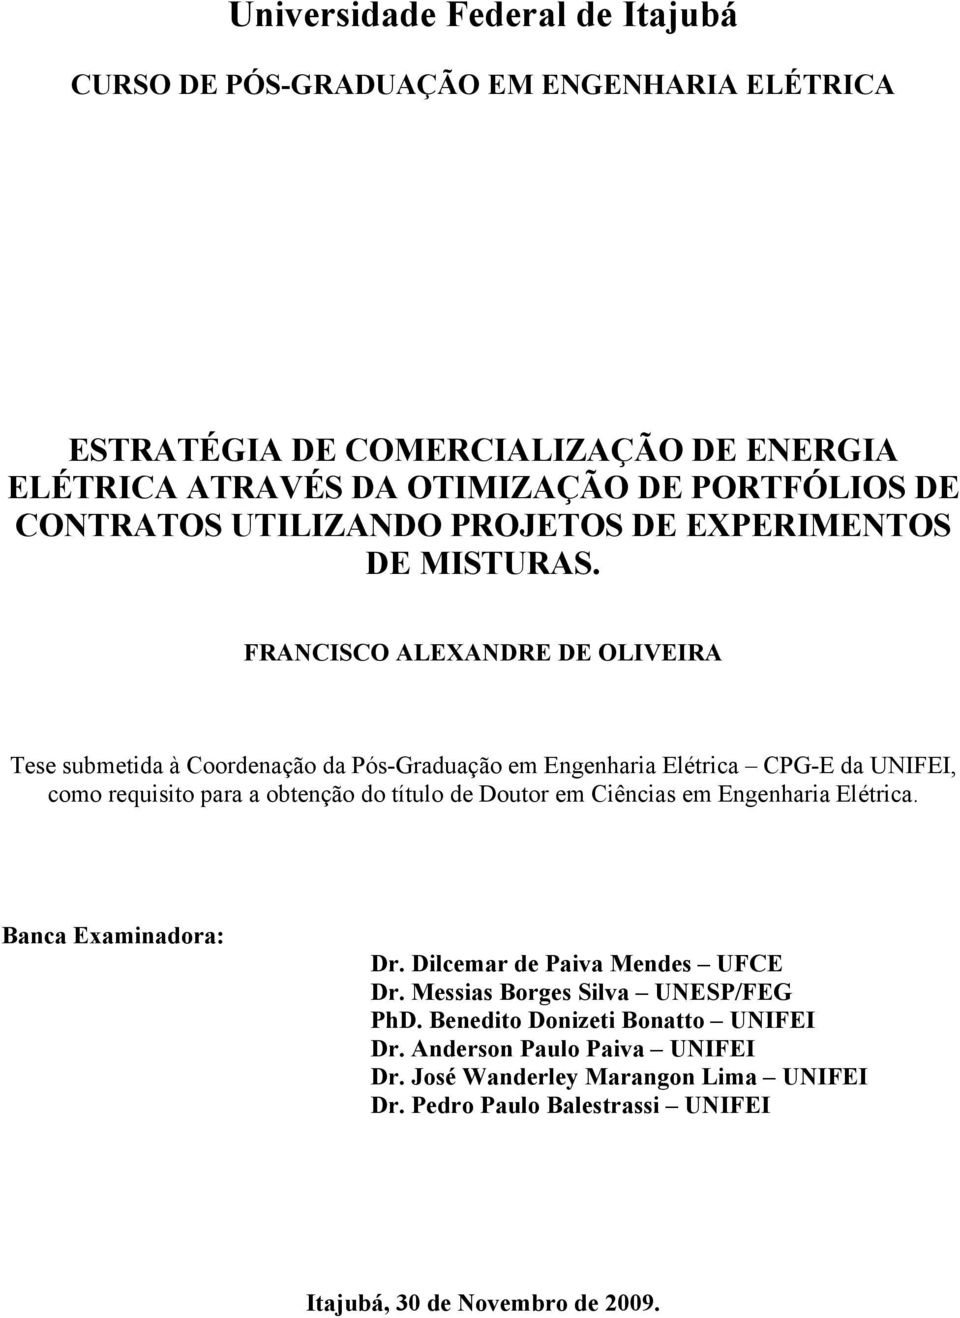 FRANCISCO ALEXANDRE DE OLIVEIRA Tese submetda à Coordenação da Pós-Graduação em Engenhara Elétrca CPG-E da UNIFEI, como requsto para a obtenção do título de Doutor em